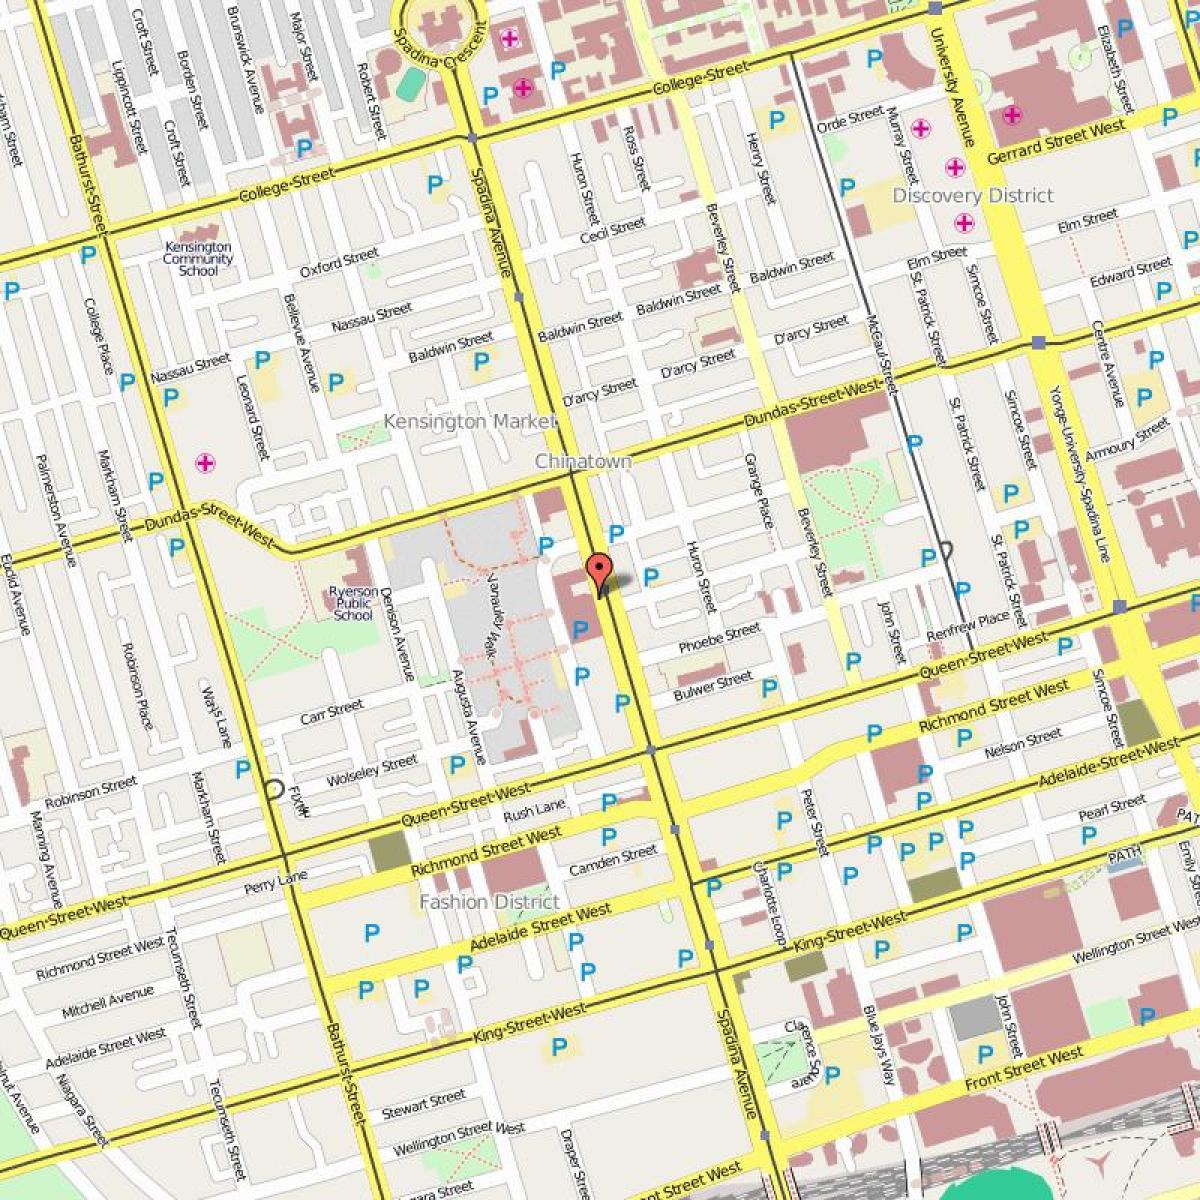 Map of Chinatown Toronto